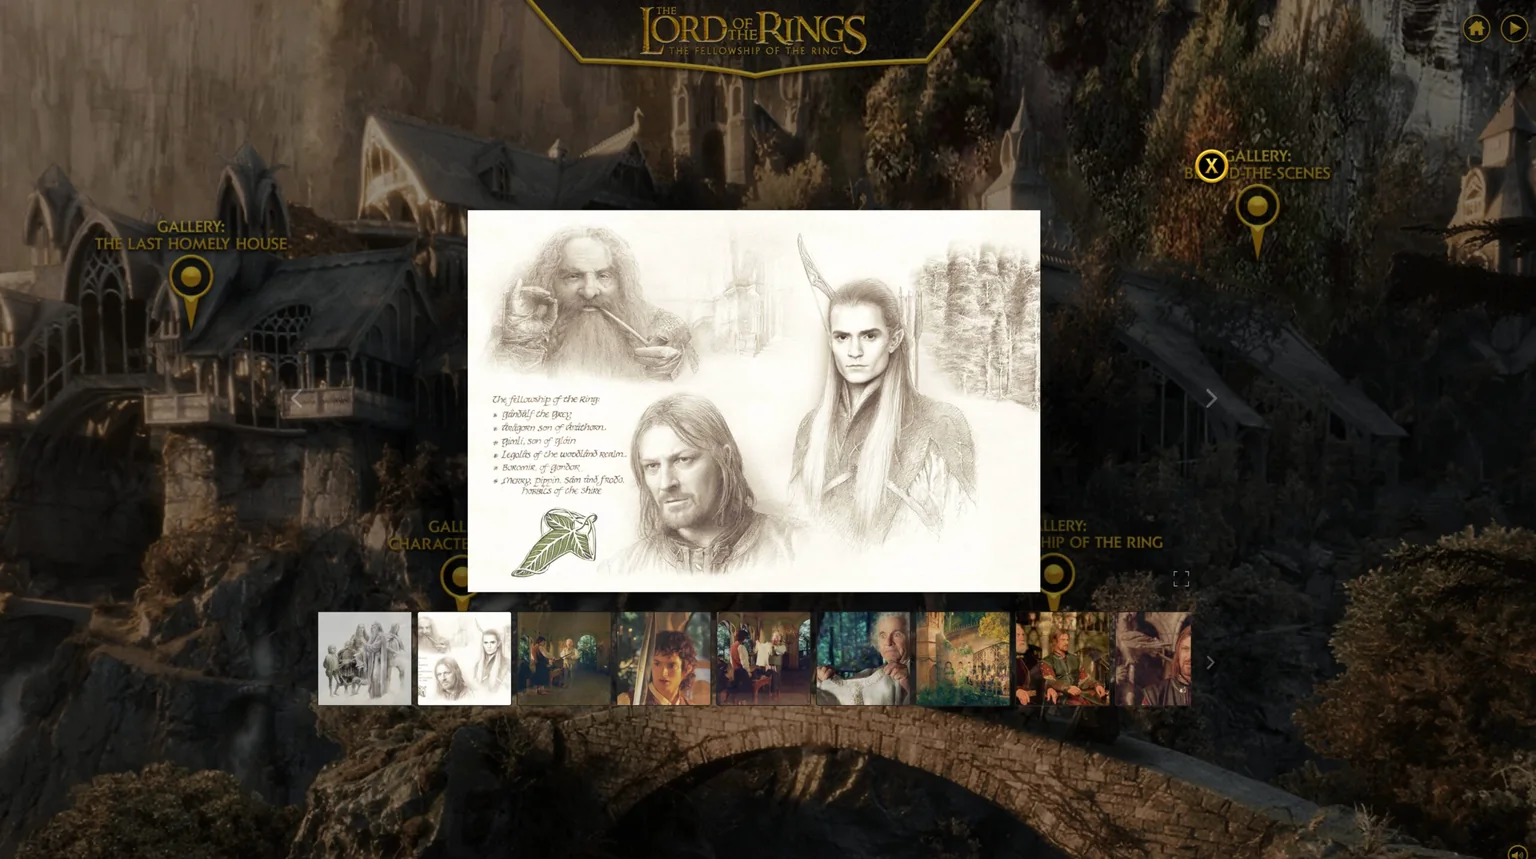 Imagen de la galería de fotos que muestra fotos de la película El señor de los anillos y contenido ilustrado.